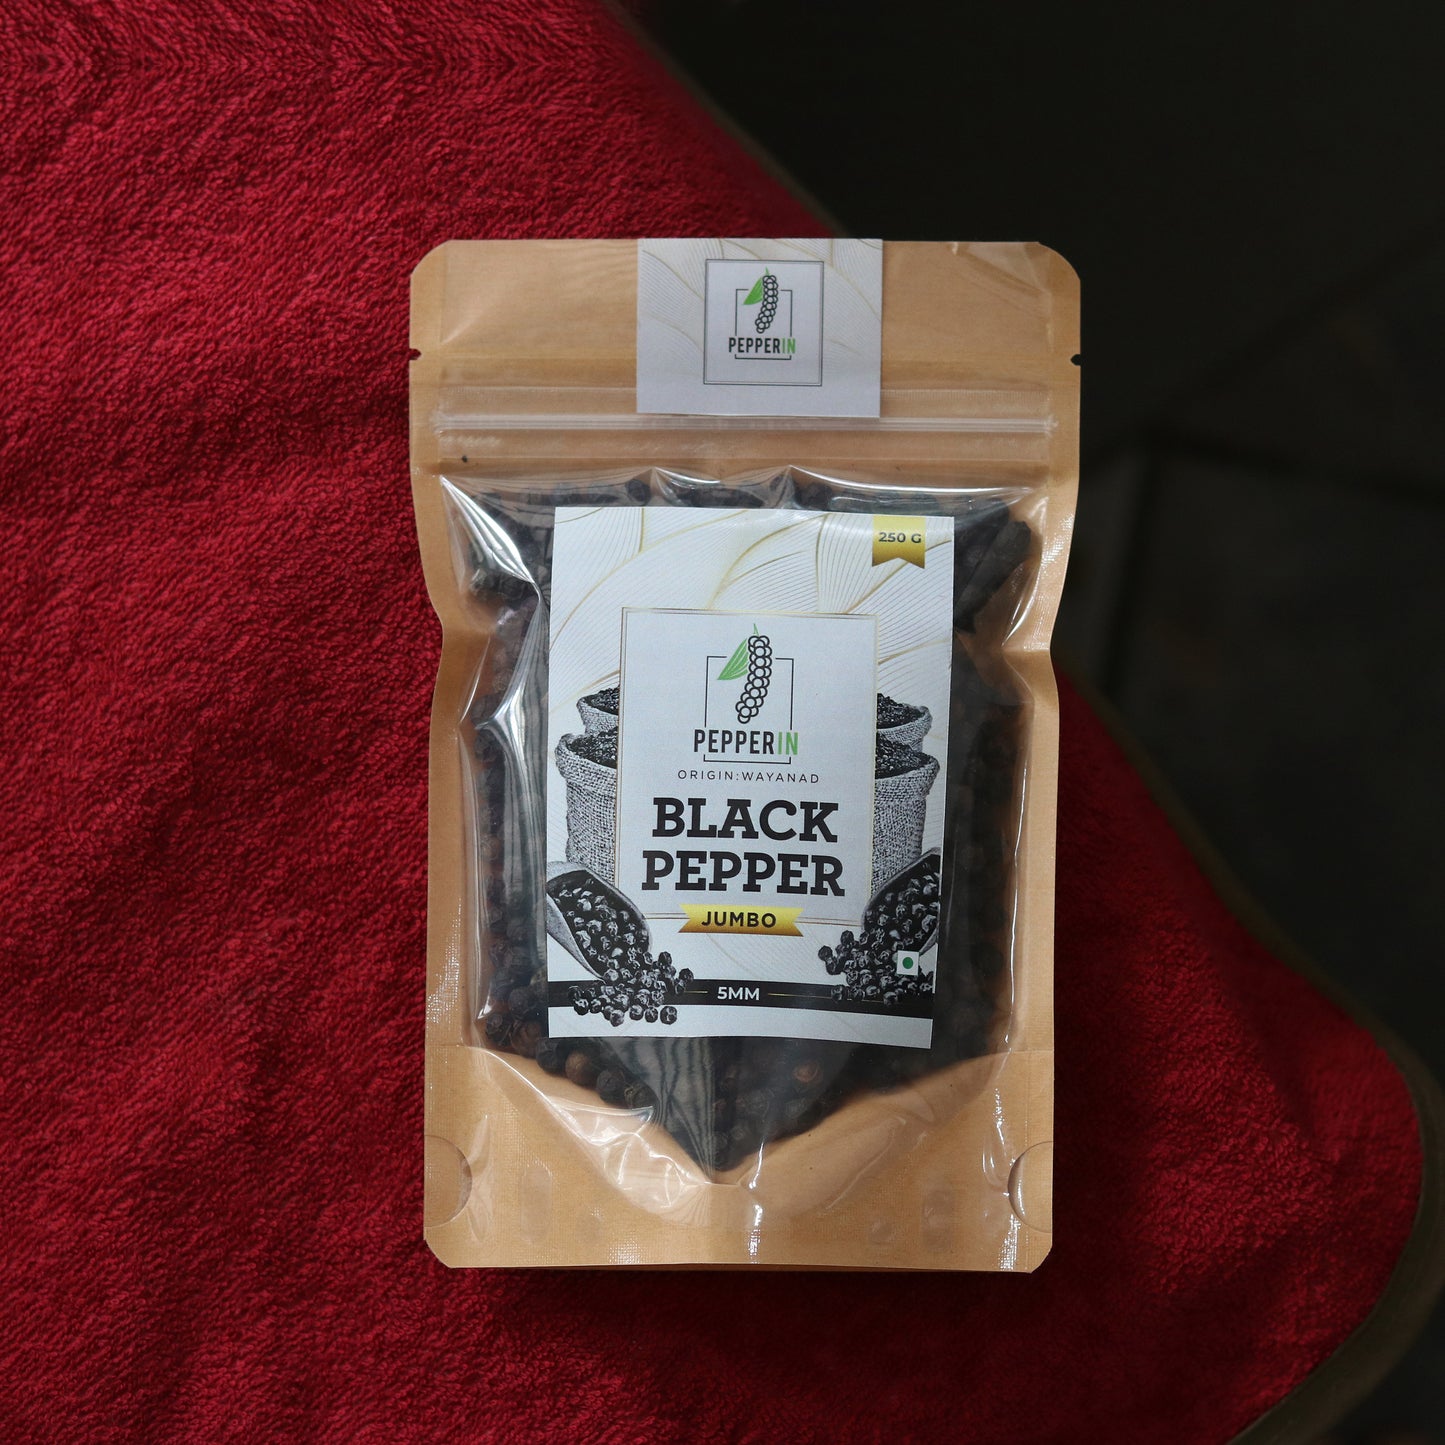 Black Pepper Jumbo (5mm)